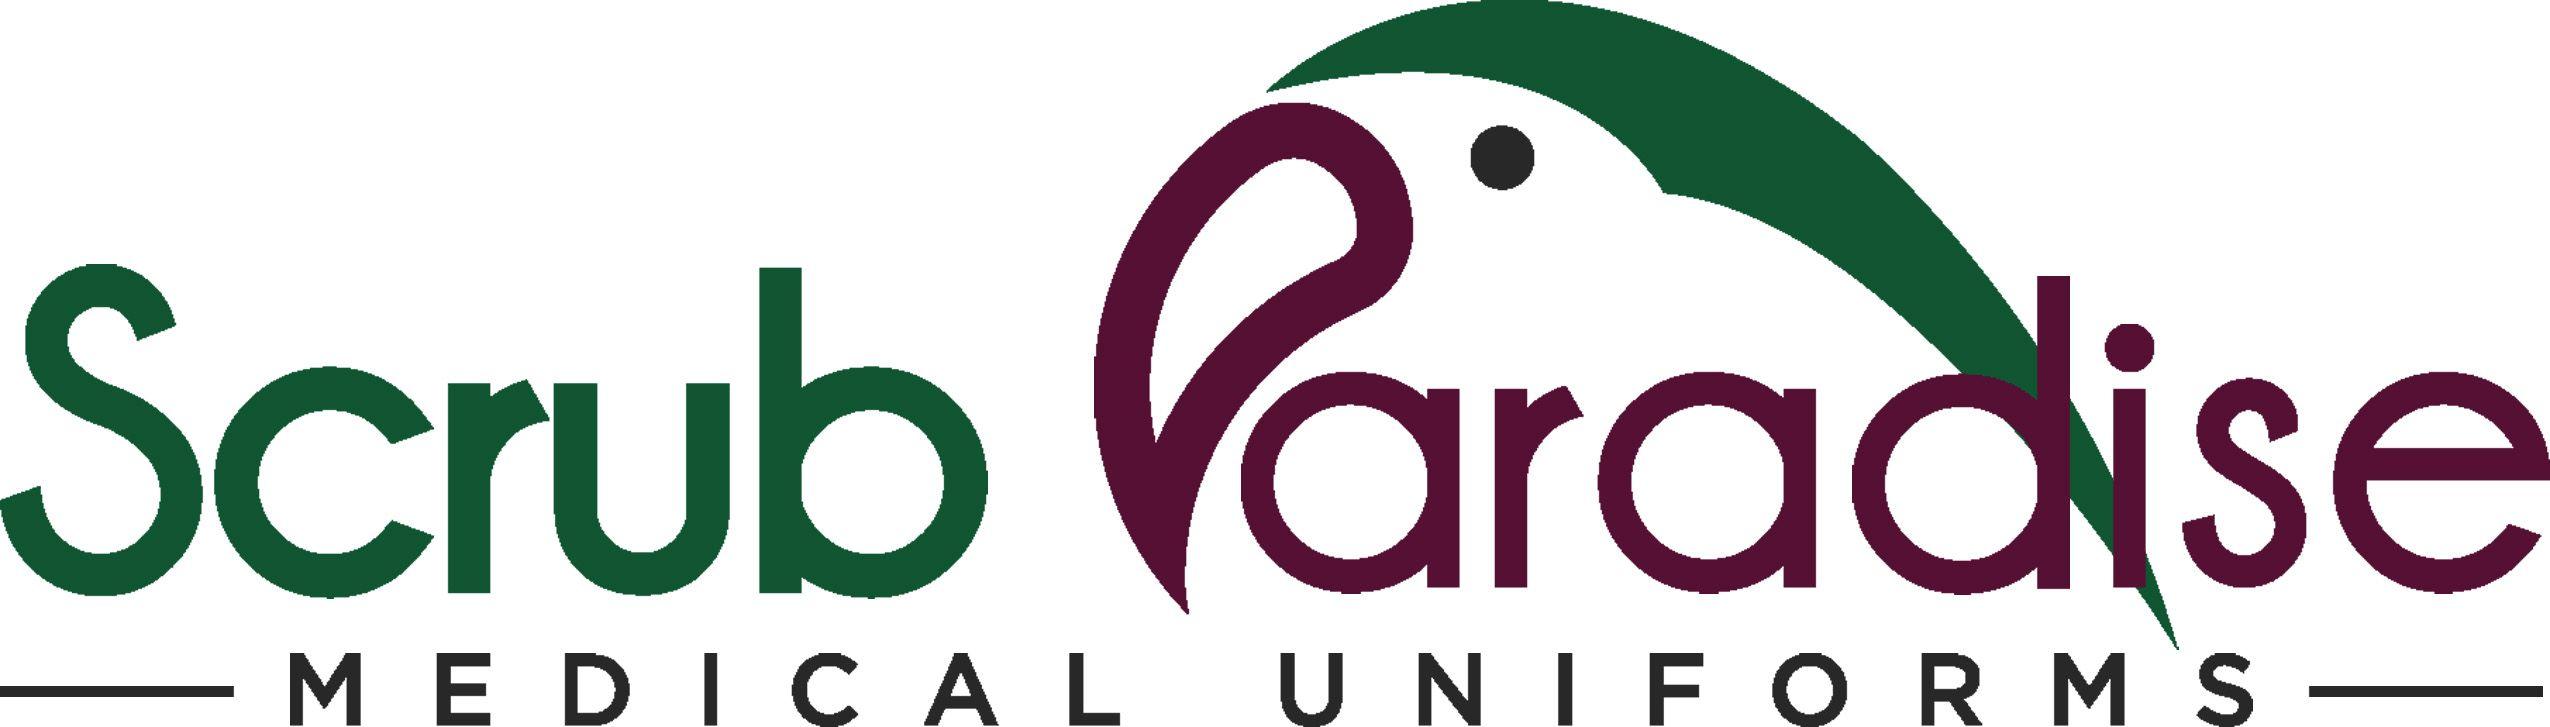 Scrubs Logo - Medical Uniforms and Scrubs in Ocala Florida